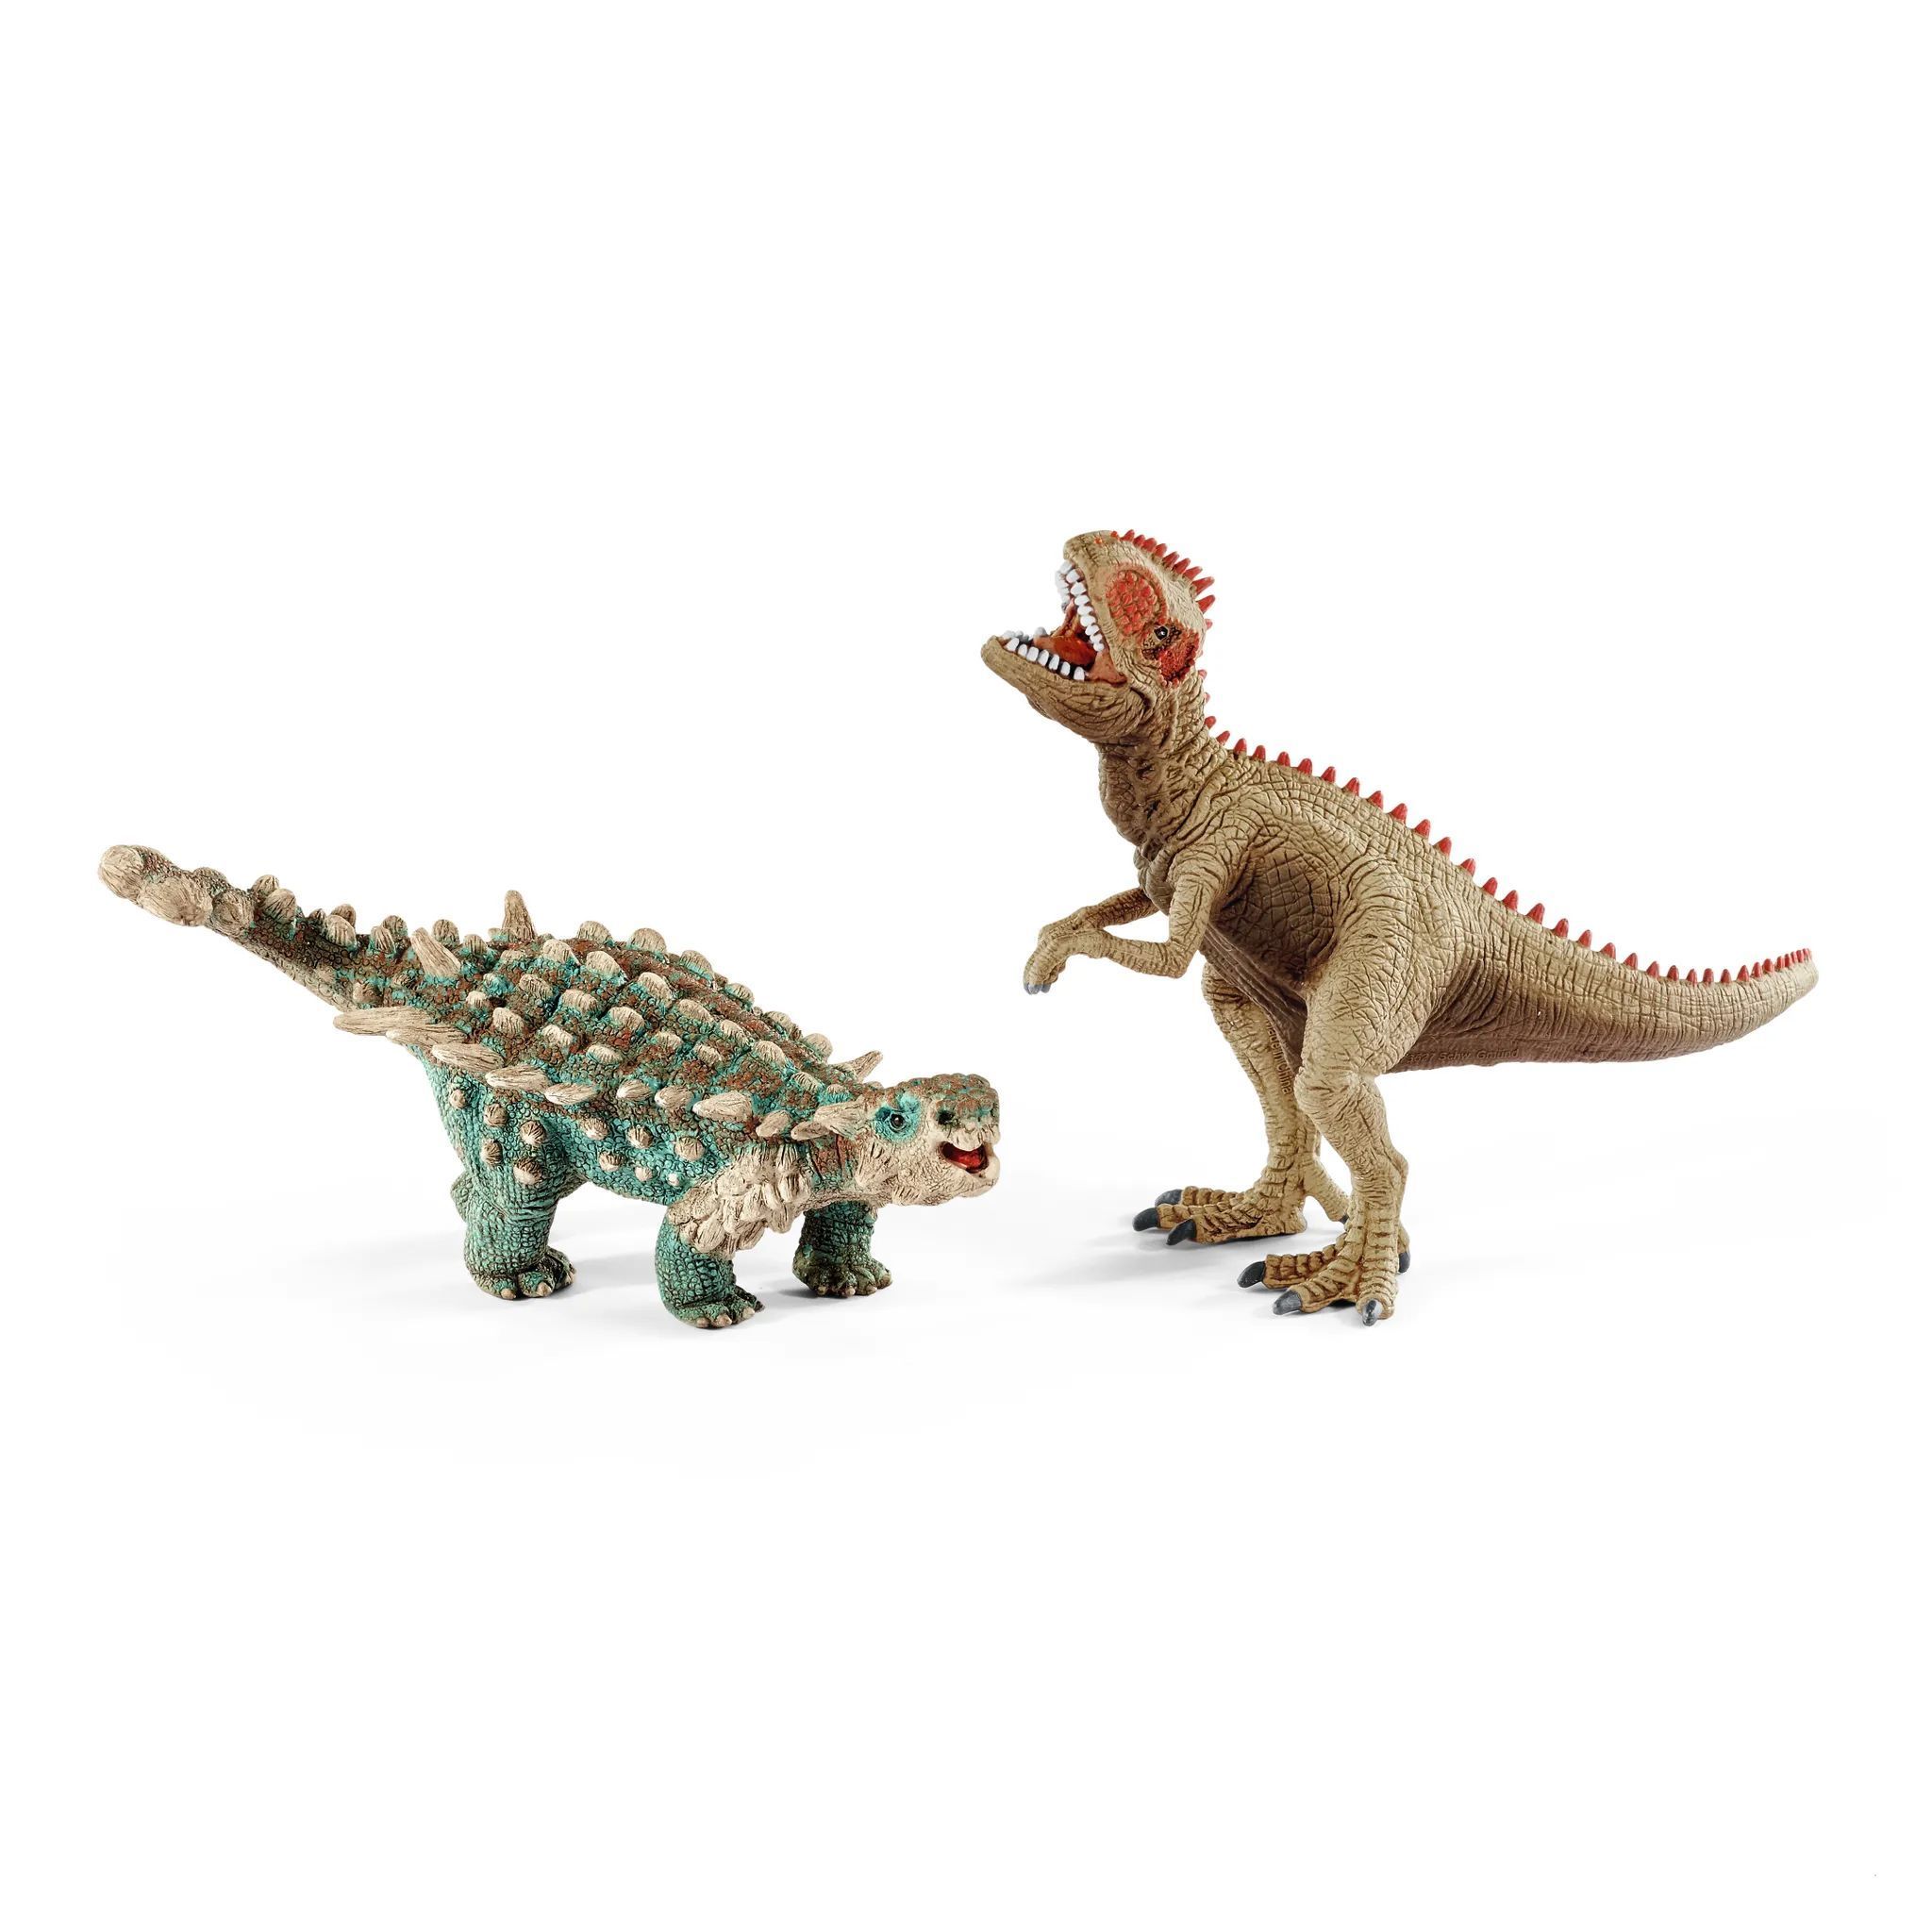 Schleich – Tierfiguren, Saichania und Giganotosaurus, klein; 41426